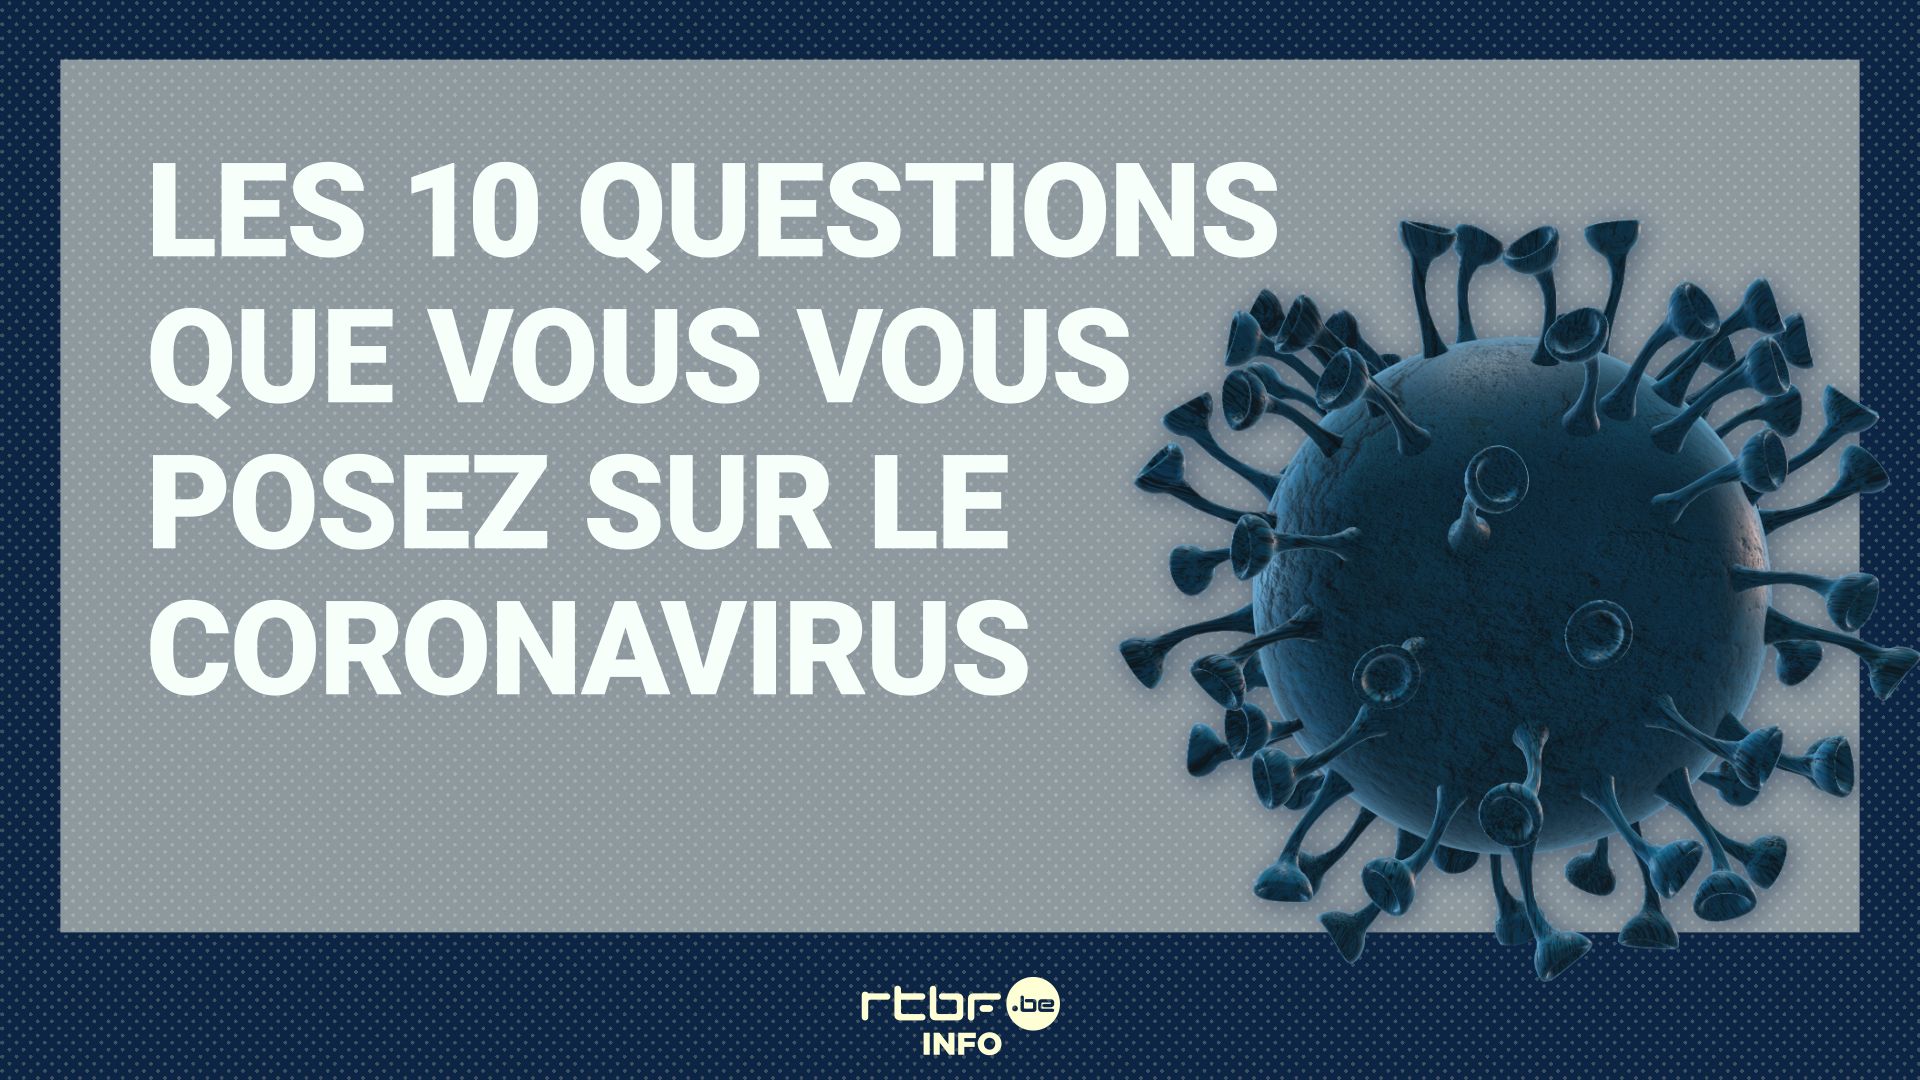 Le coronavirus vous inquiète? Voici des réponses à vos questions